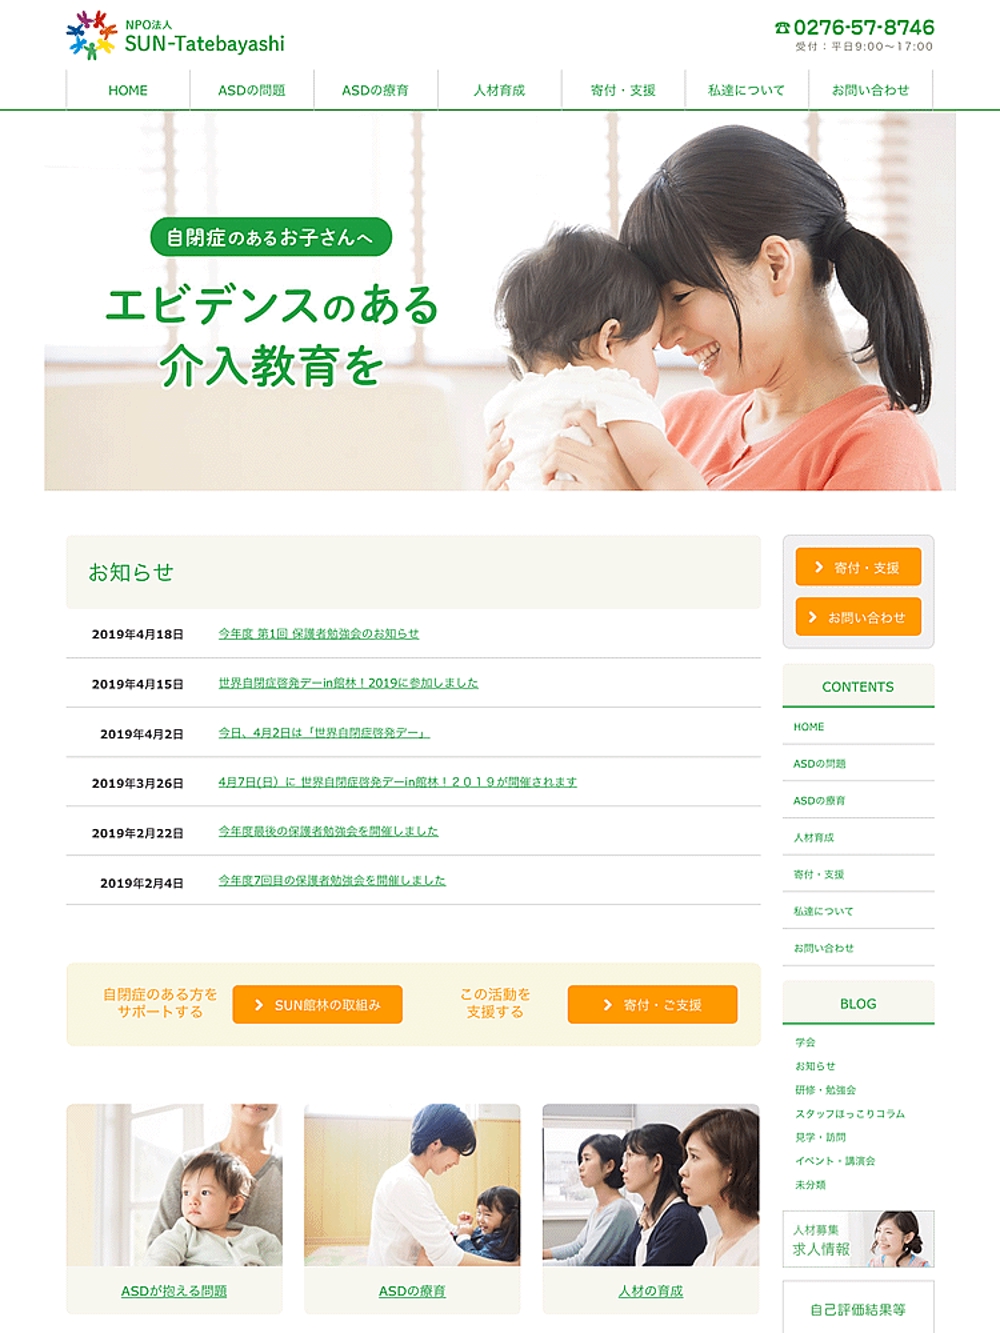 NPO法人SUN-Tatebayashi Webサイト